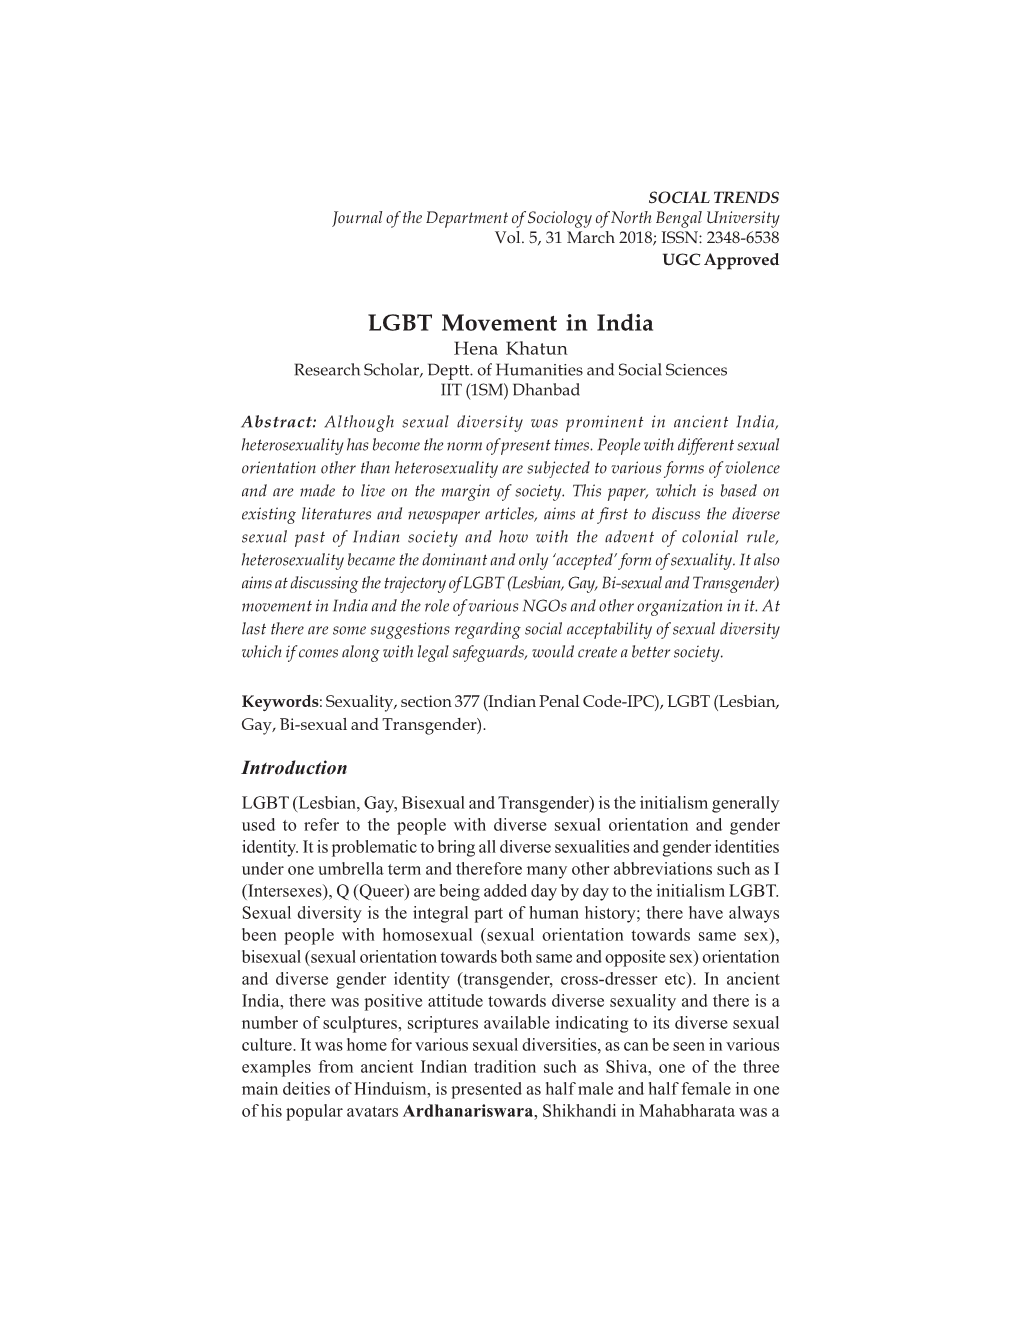 LGBT Movement in India Hena Khatun Research Scholar, Deptt